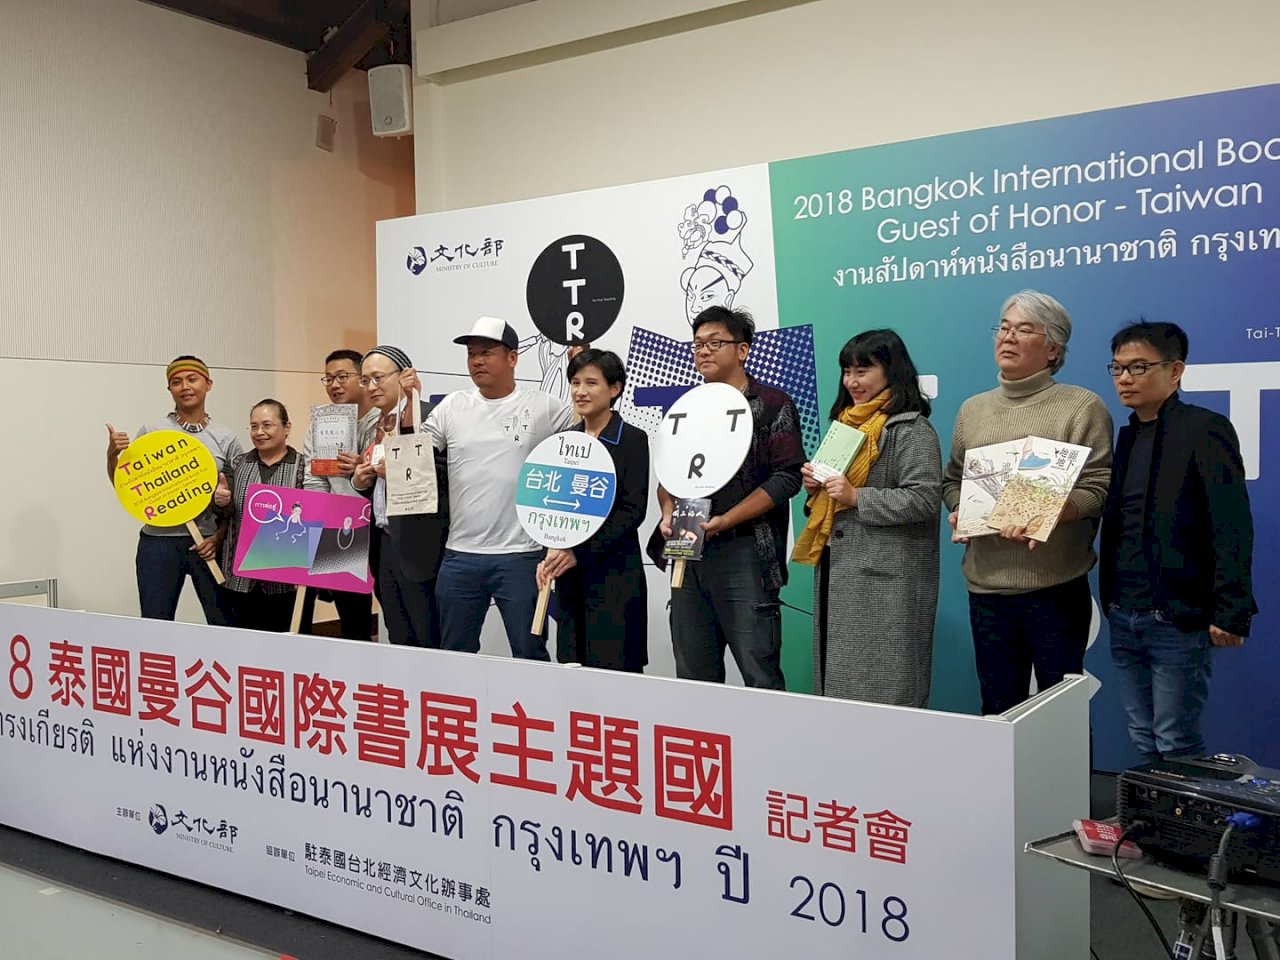 睽違11年 台灣2度擔任曼谷國際書展主題國